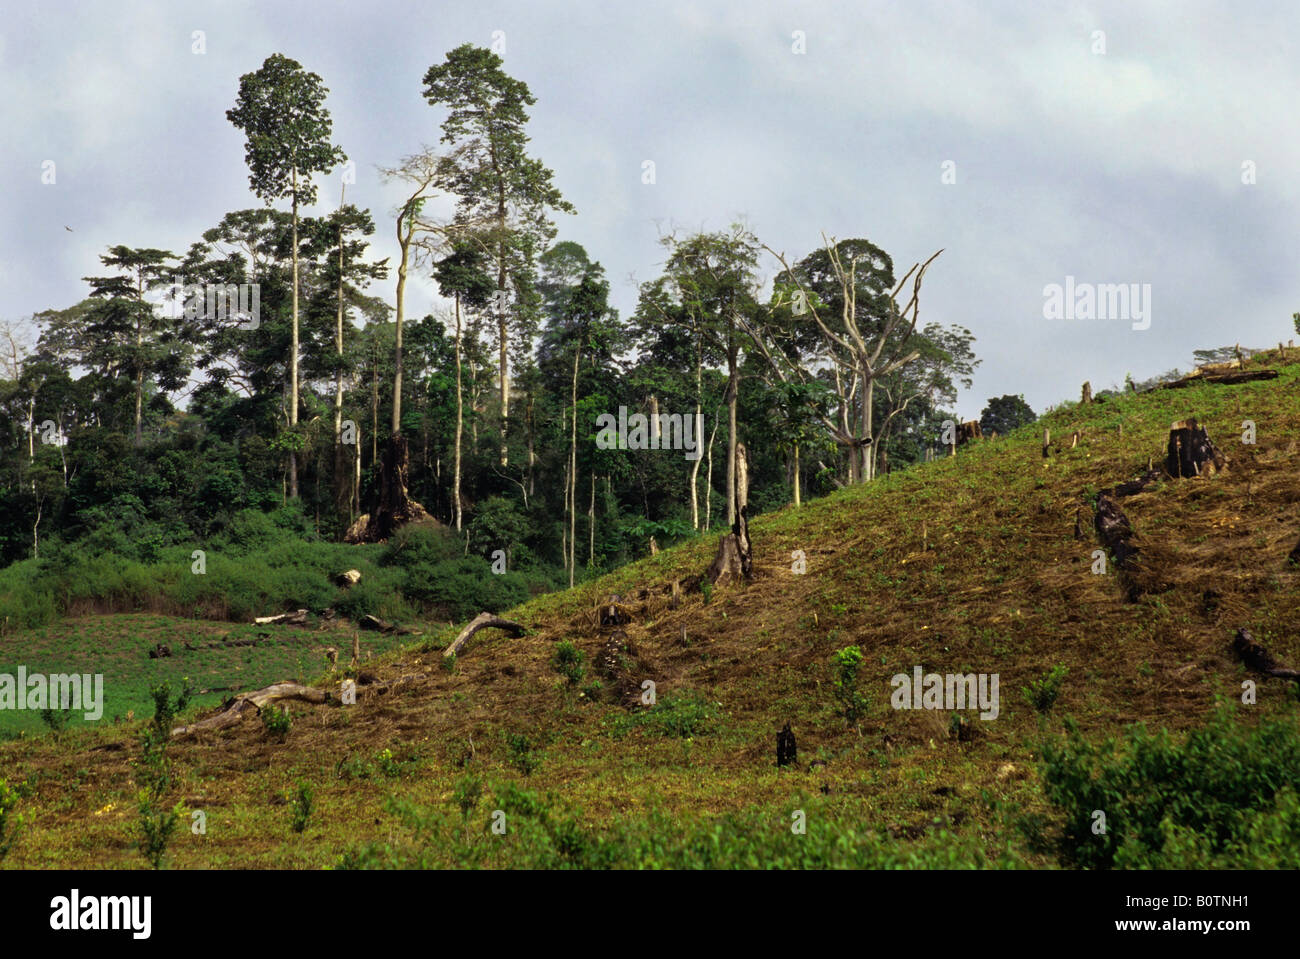 La parte occidentale della Costa d Avorio, Costa d'Avorio, in Africa occidentale. La deforestazione per l'agricoltura commerciale, per lime tree coltivazione. Foto Stock